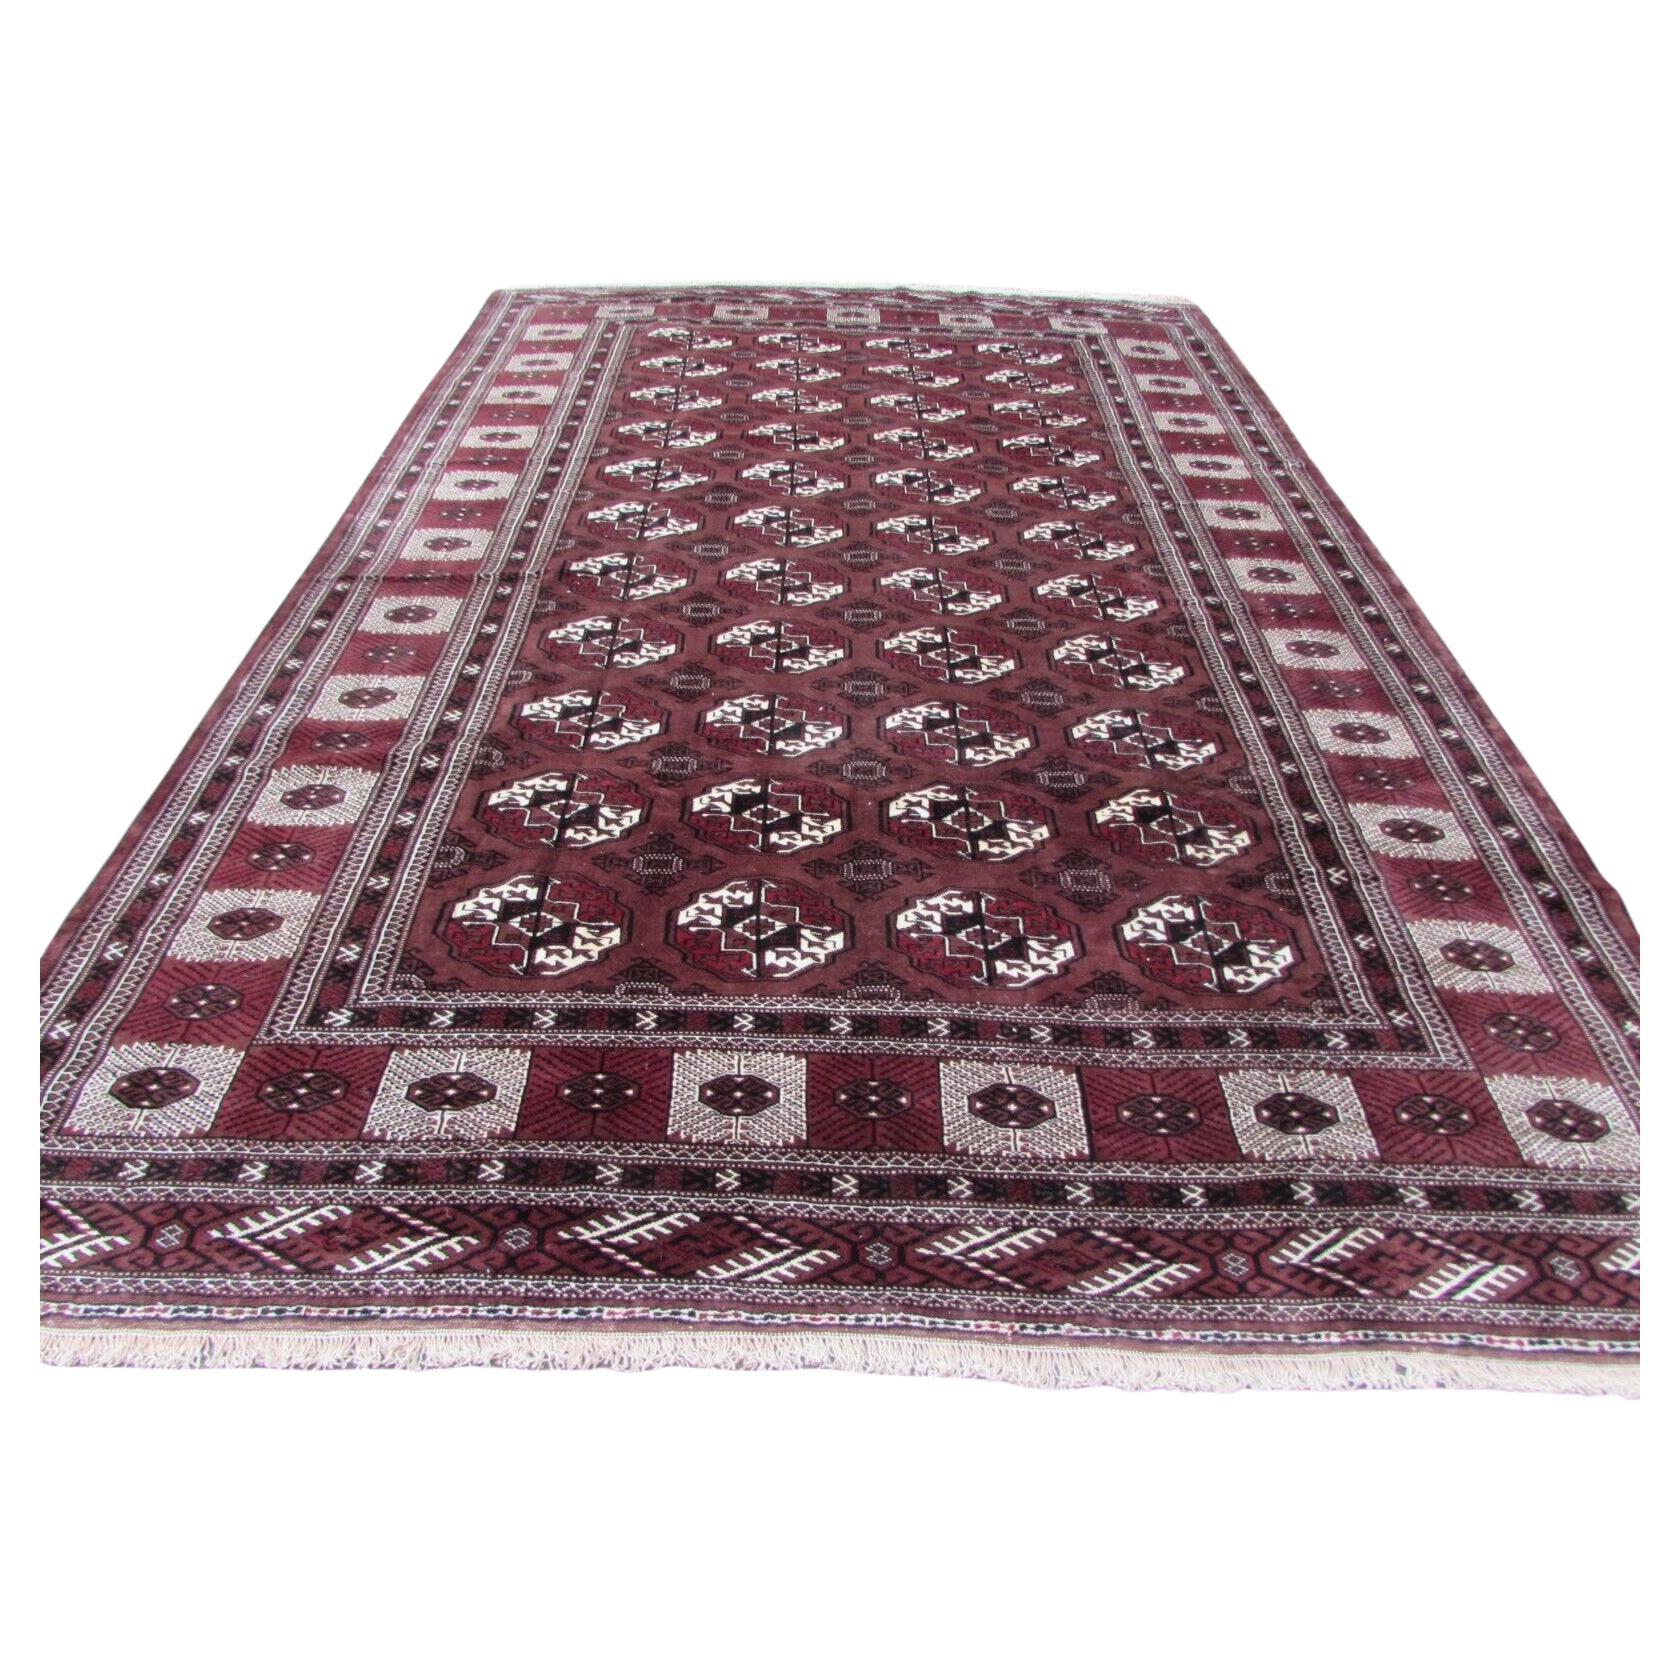 What is a Tekke rug?